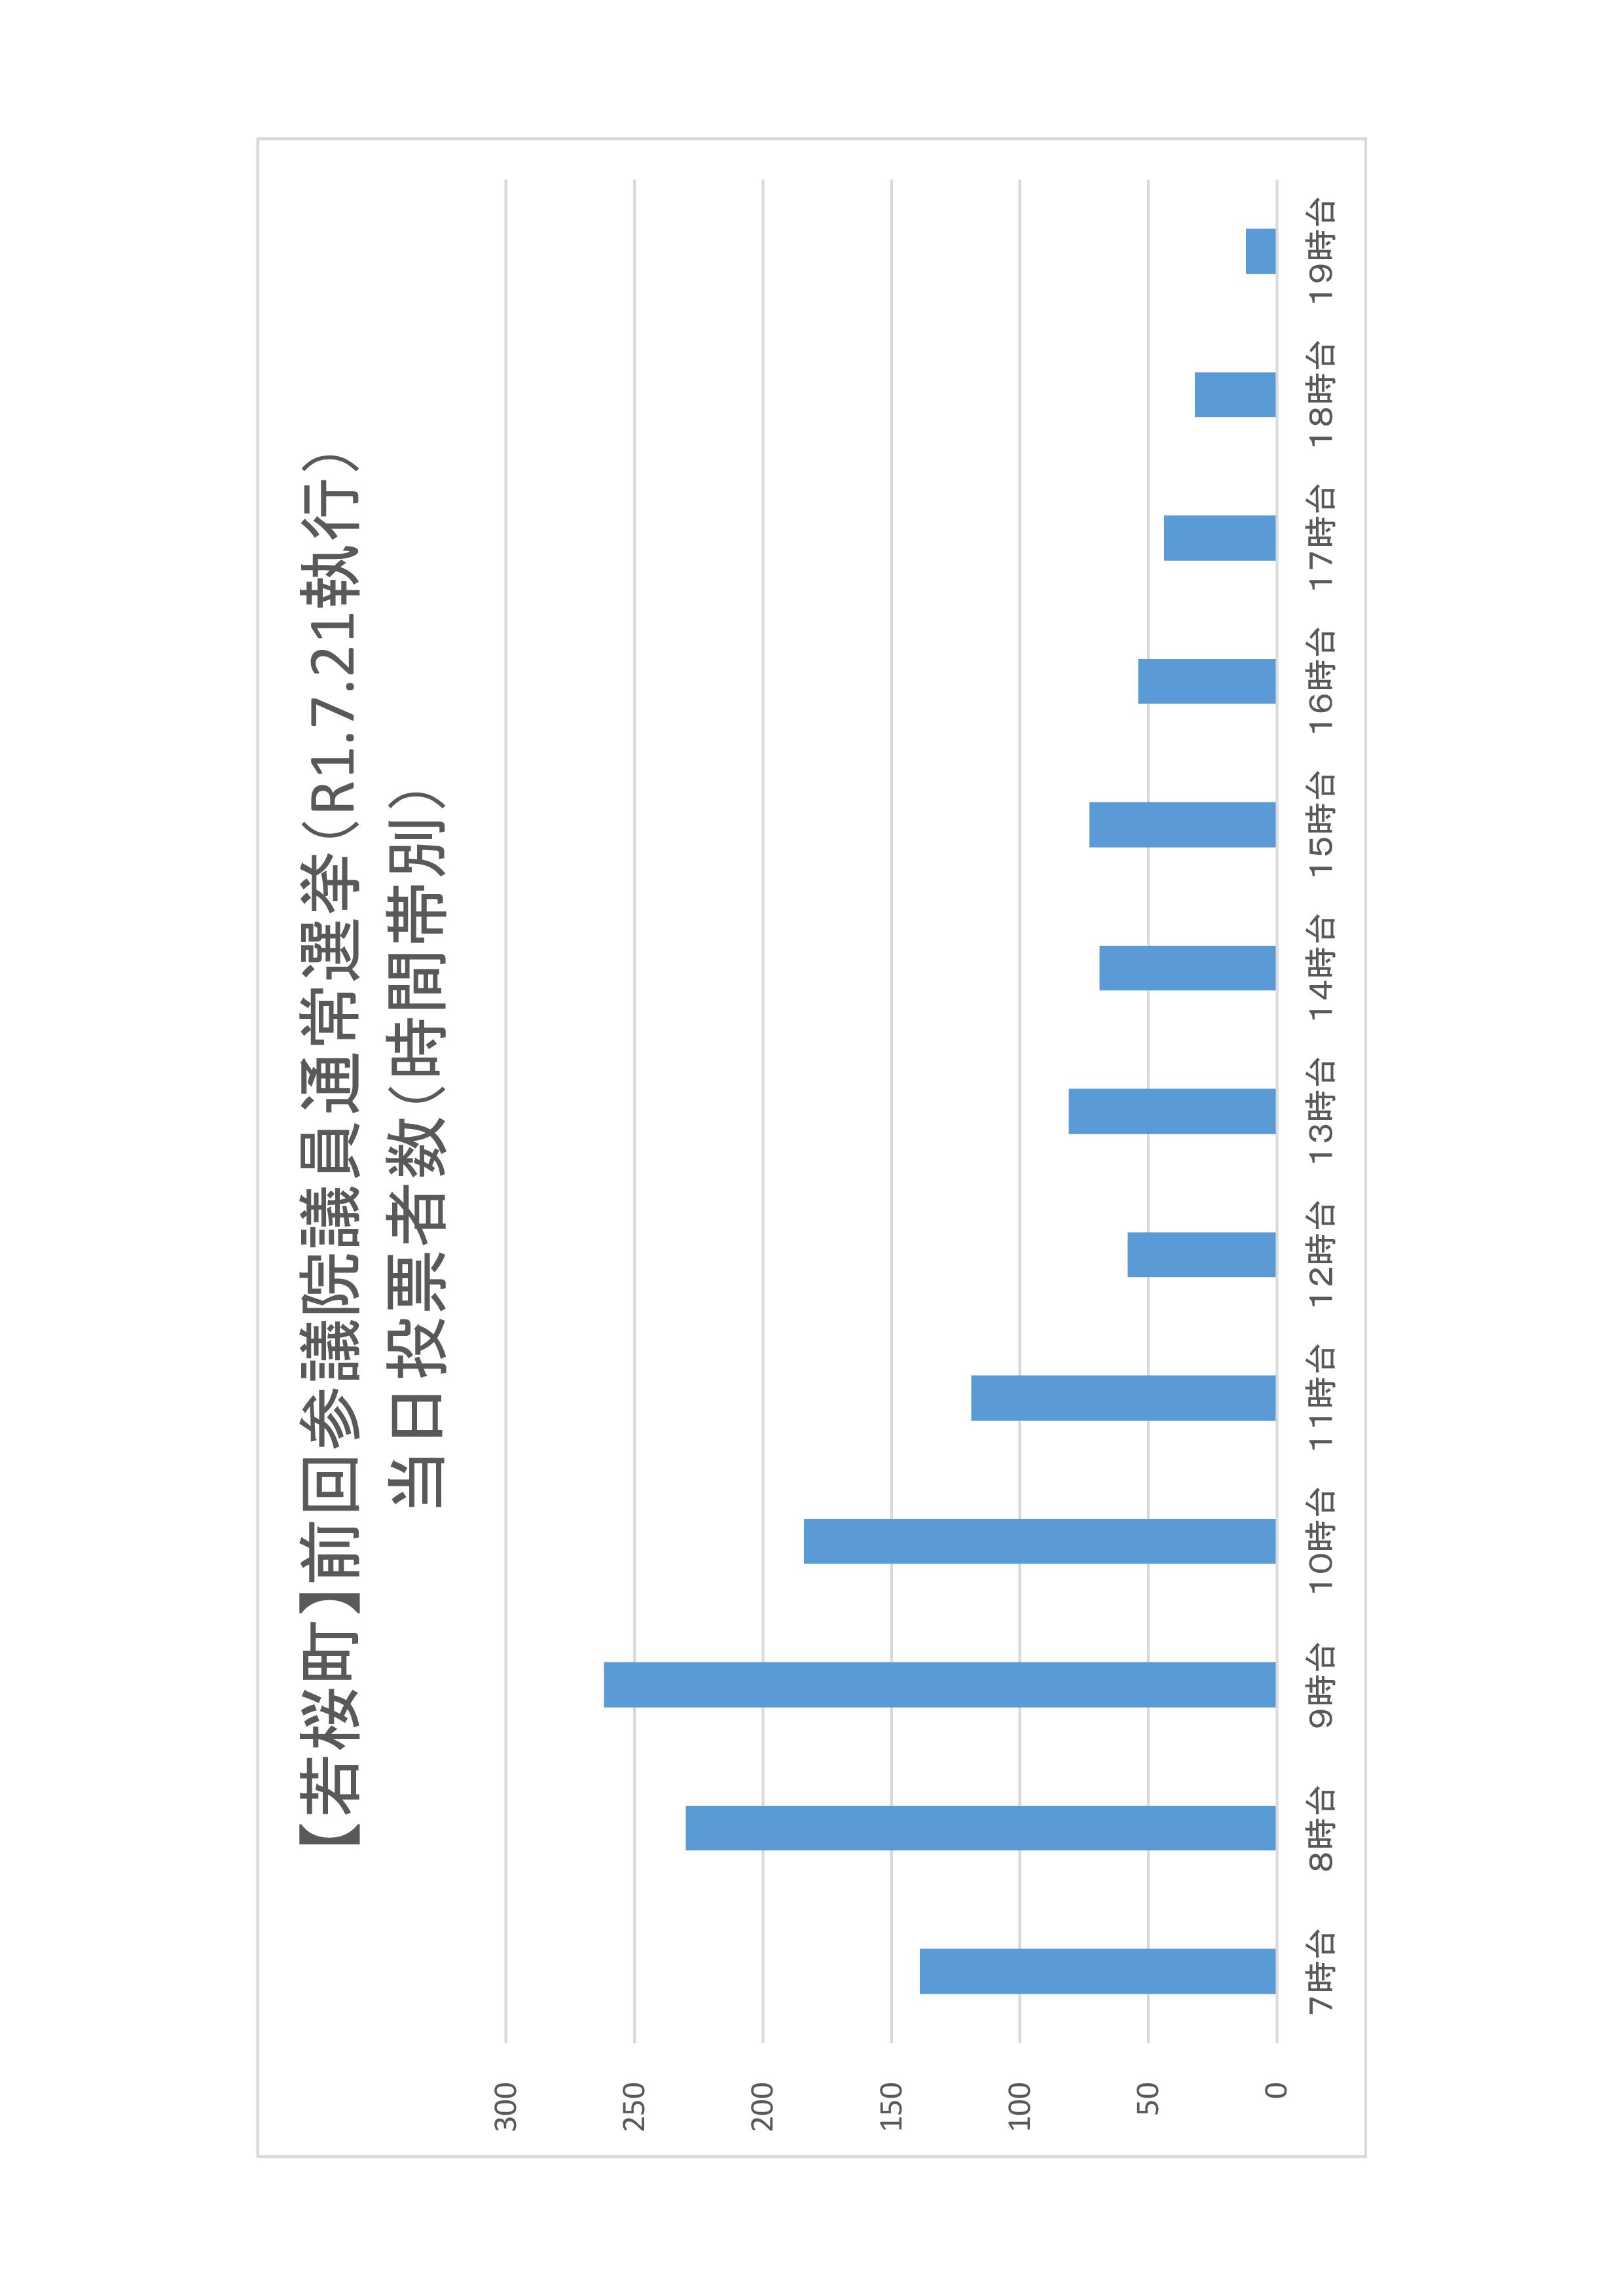 岩美町の時間帯別当日投票者数のグラフ